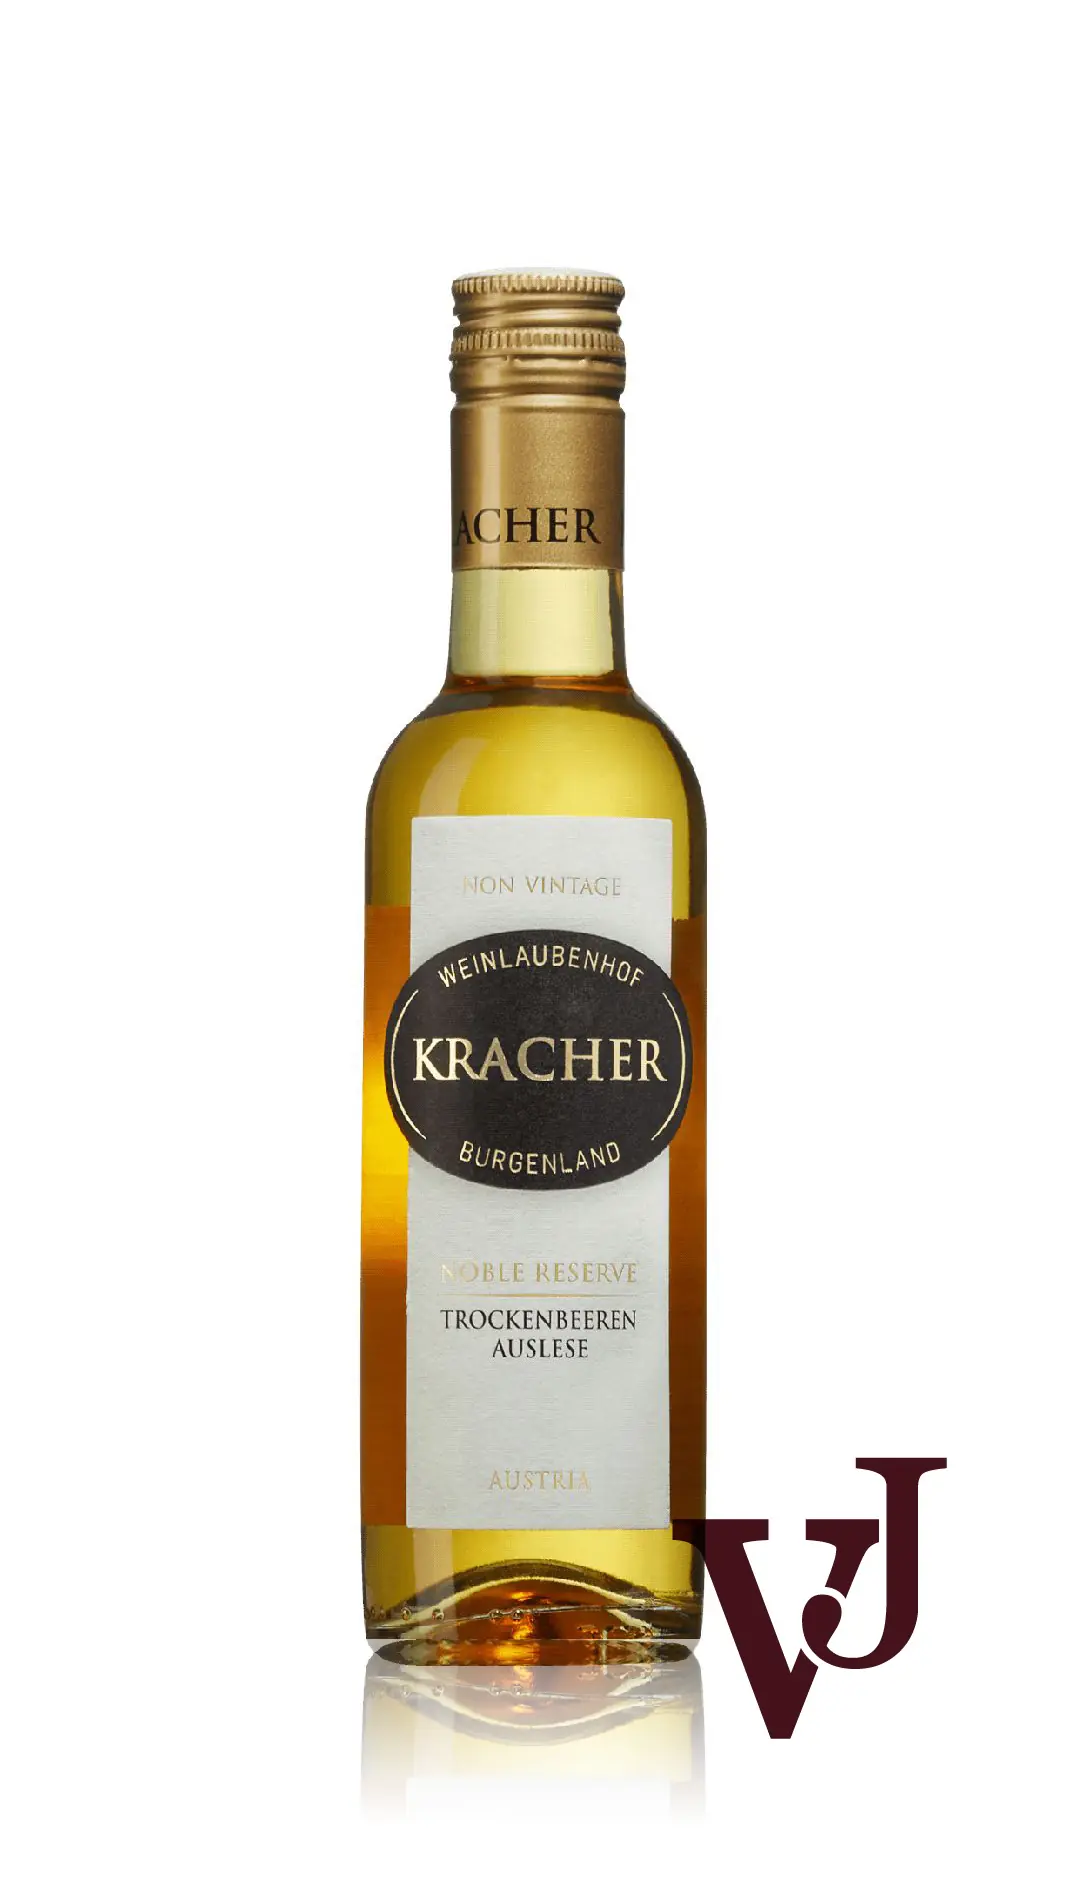 Vitt Vin - Kracher Noble Reserve Trockenbeerenauslese artikel nummer 9205404 från producenten Kracher från området Österrike - Vinjournalen.se